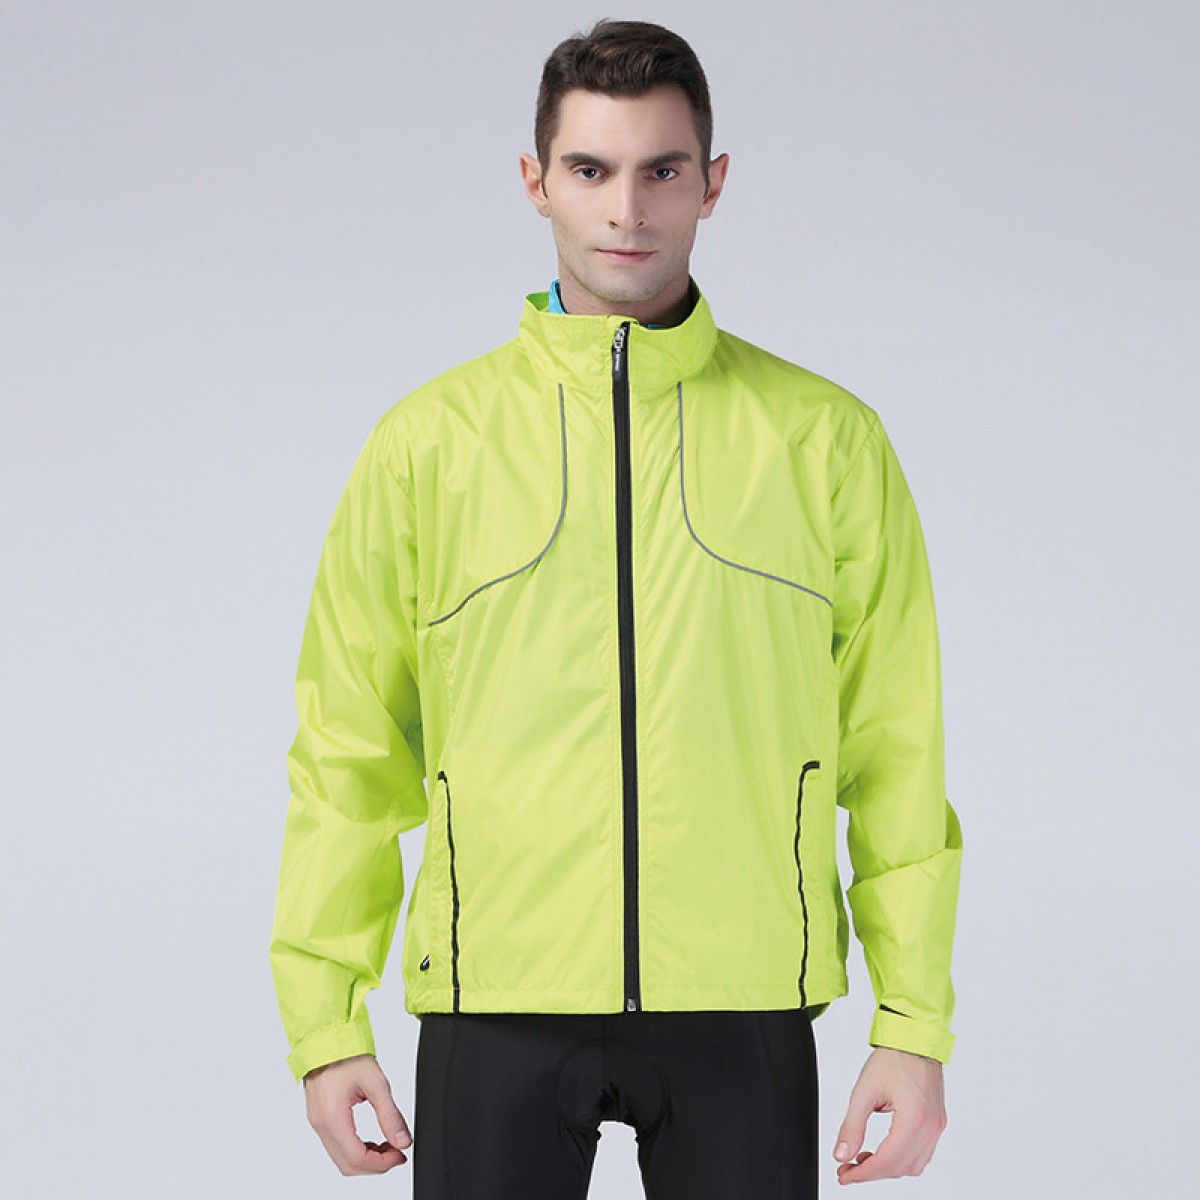 Spiro Crosslite Trail & Track jacket. Ideal for customising.